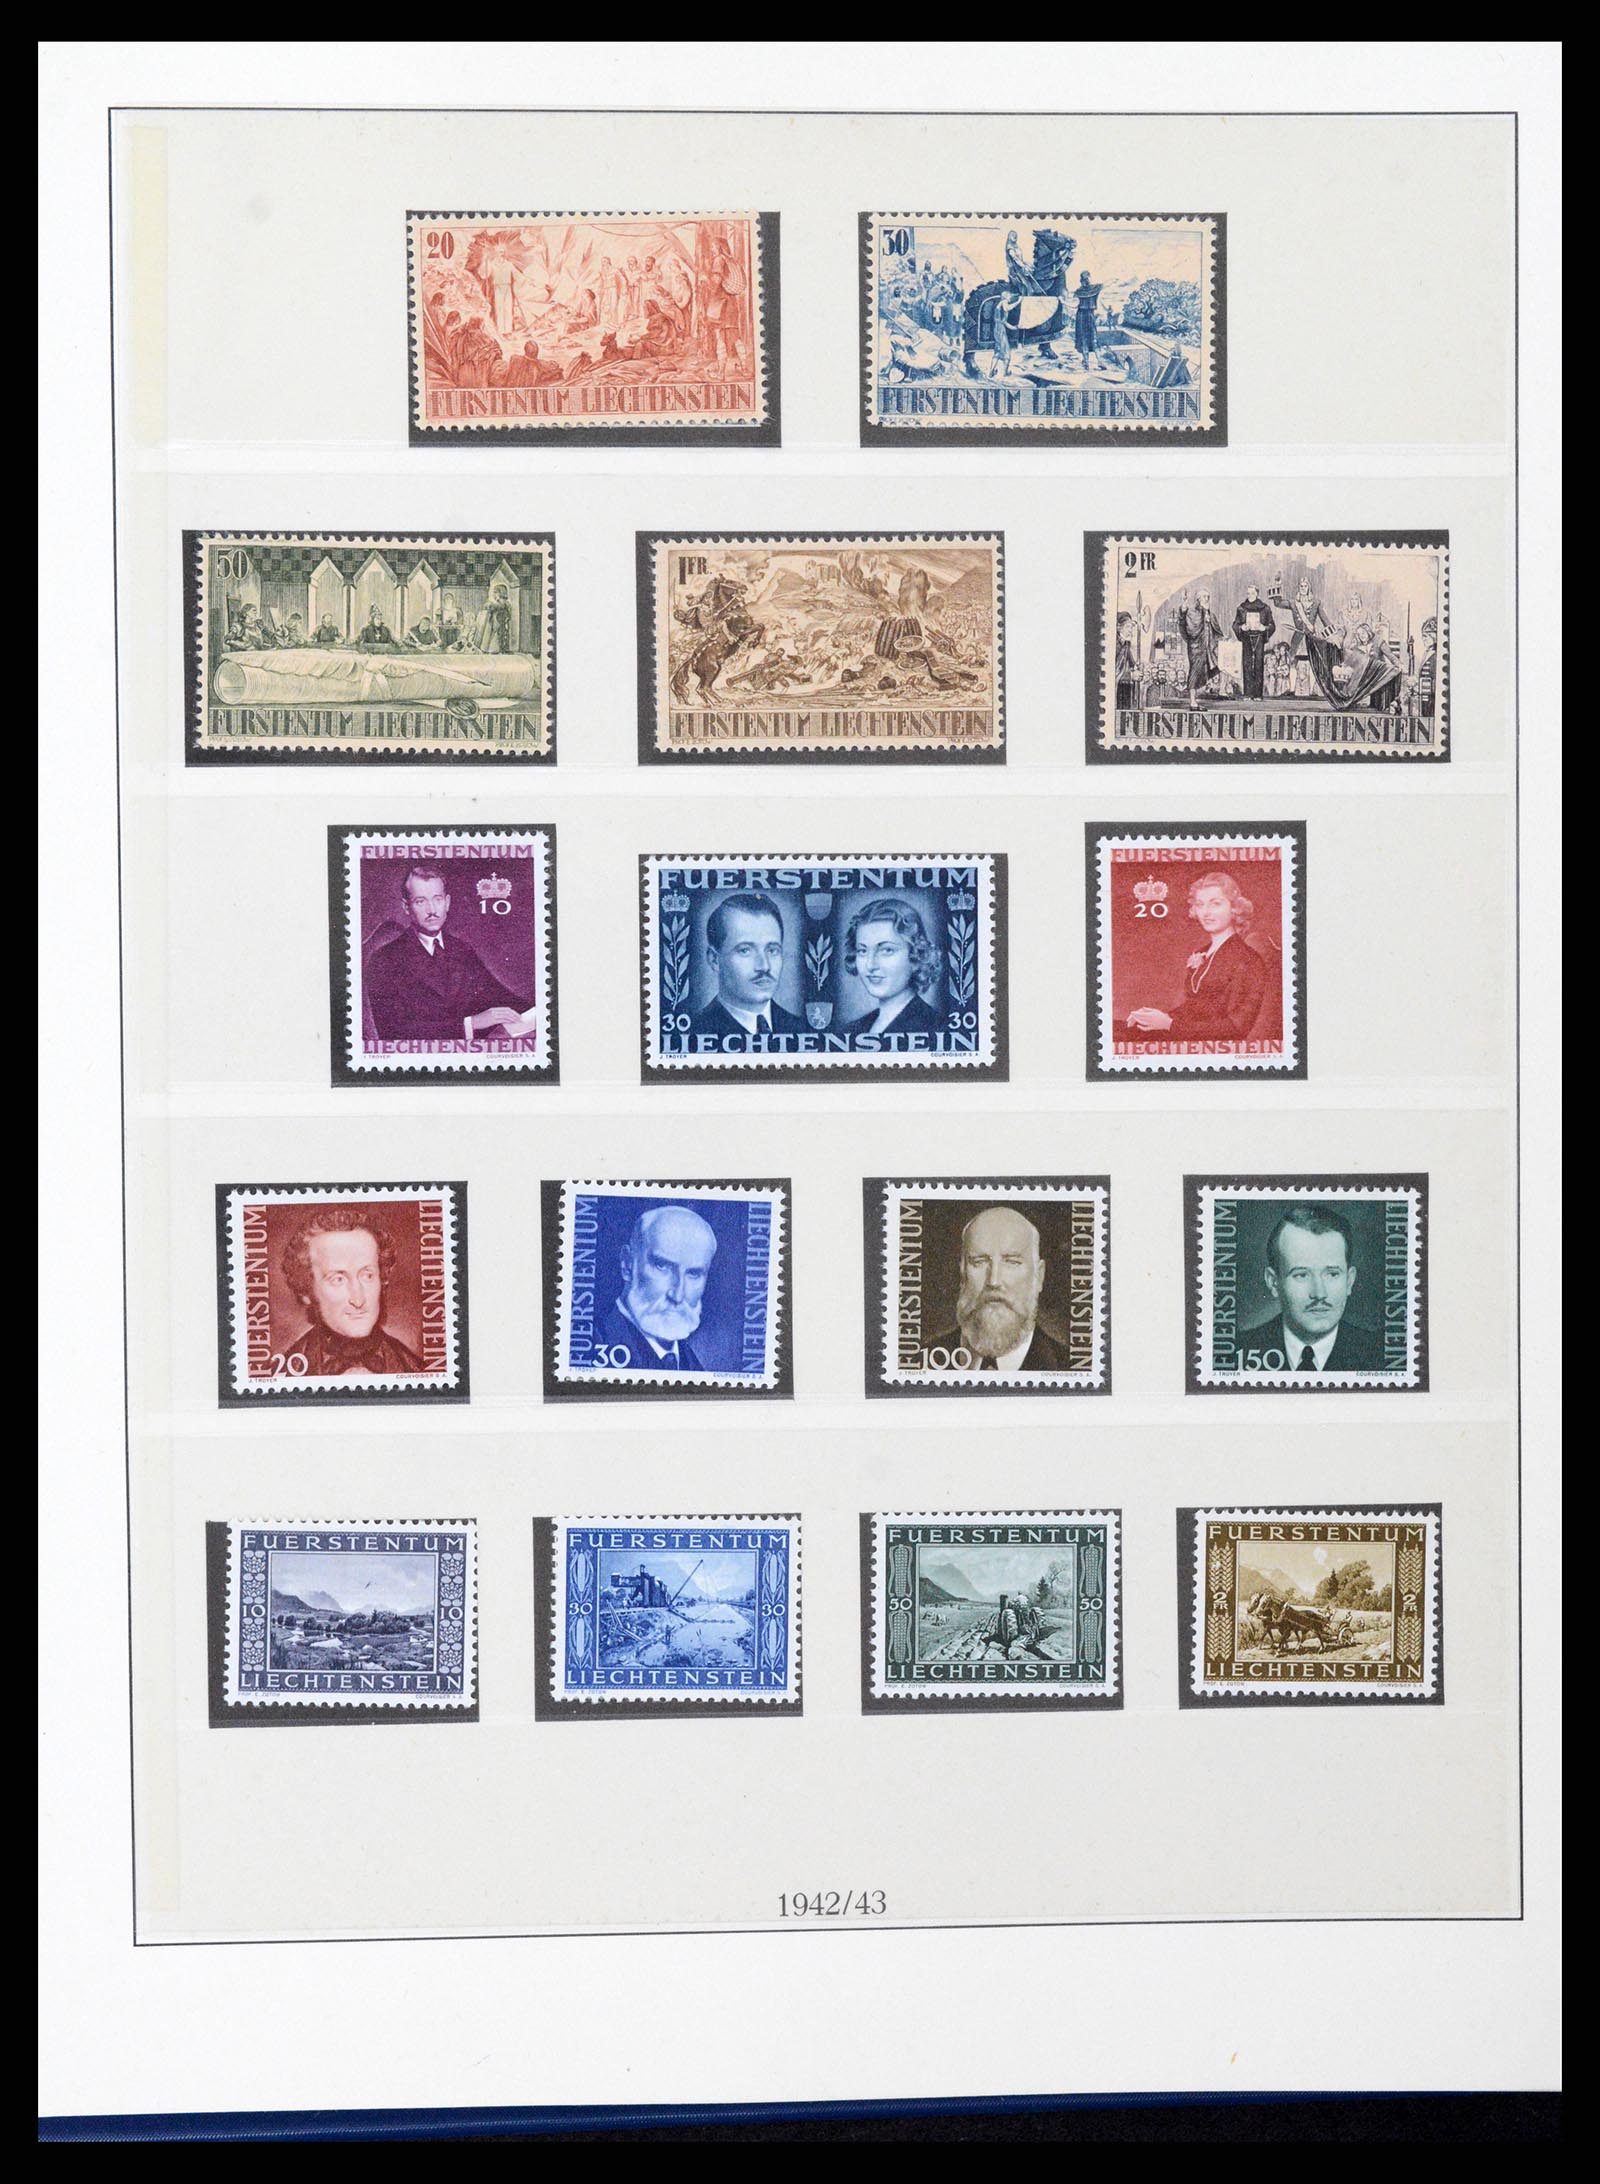 37295 017 - Stamp collection 37295 Liechtenstein 1912-2009.